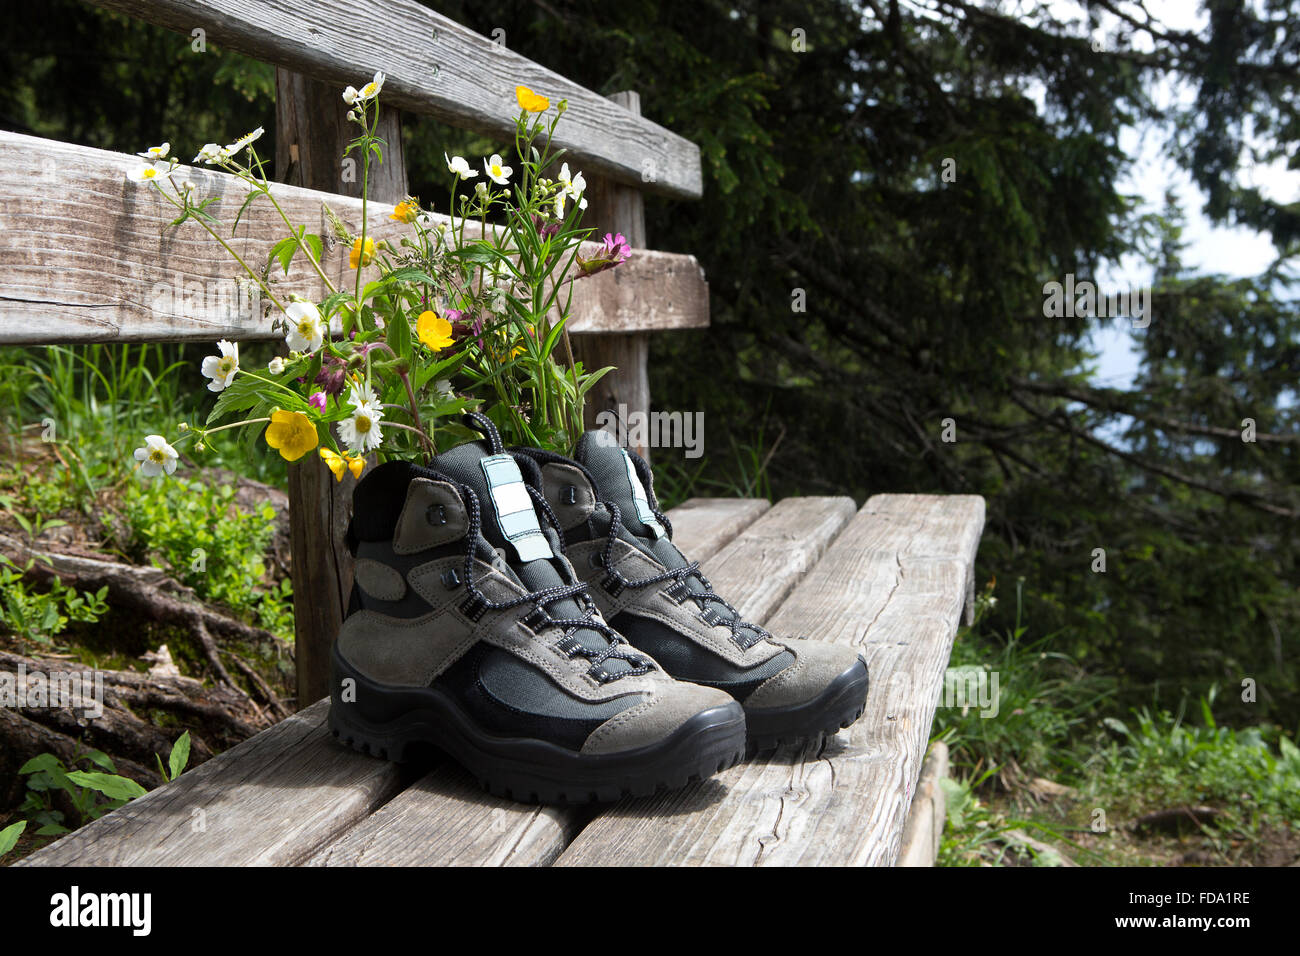 Scarpe da trekking con fiori su un banco, estate Foto Stock